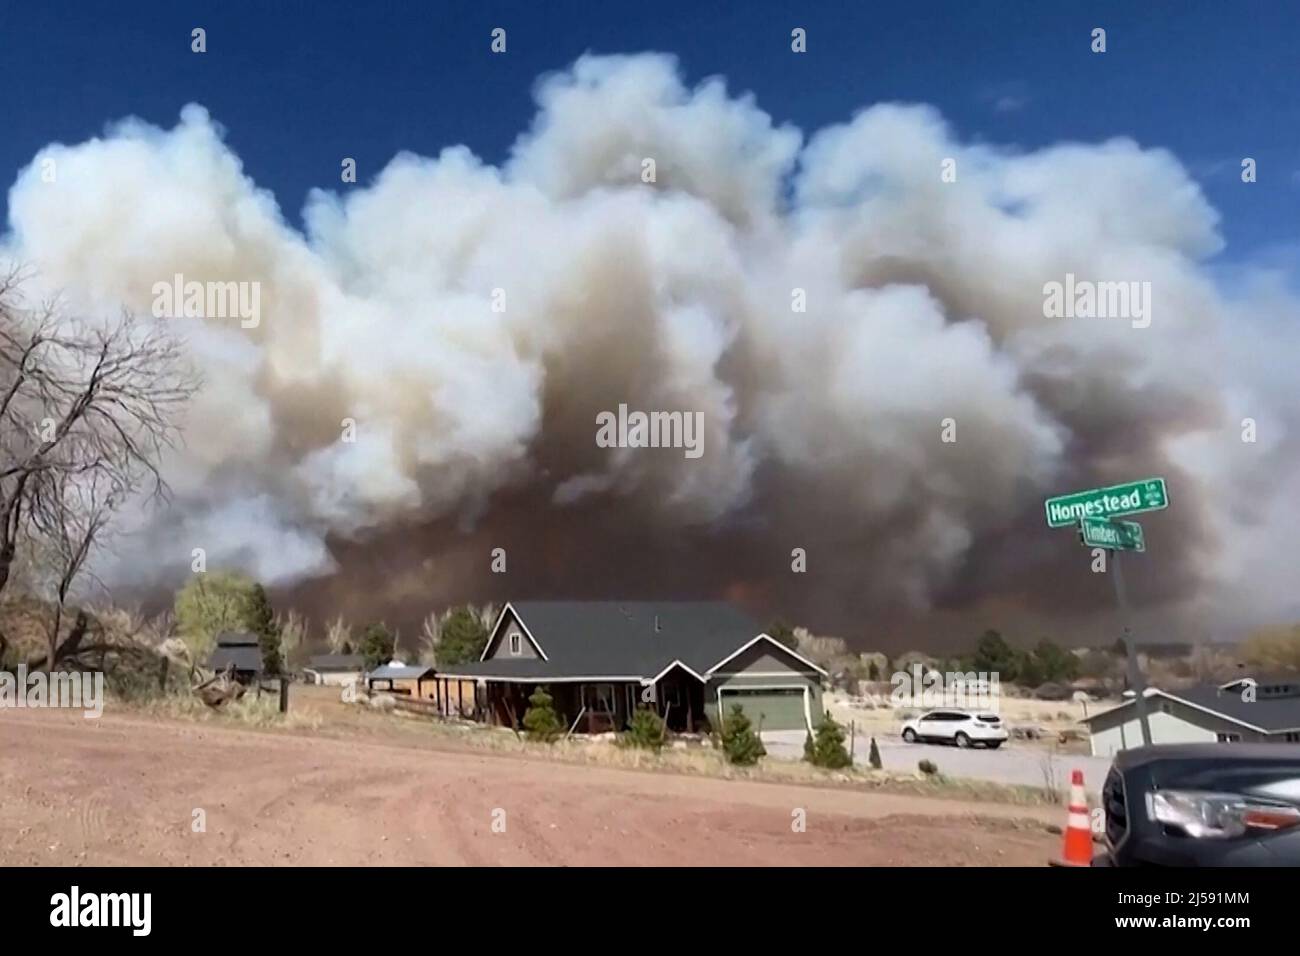 La fumée s'échappe du tunnel Fire au nord de Flagstaff, Arizona le 19 avril 2022 dans une image fixe de la vidéo. Image prise le 19 avril 2022. REUTERS/Reuters TV Banque D'Images